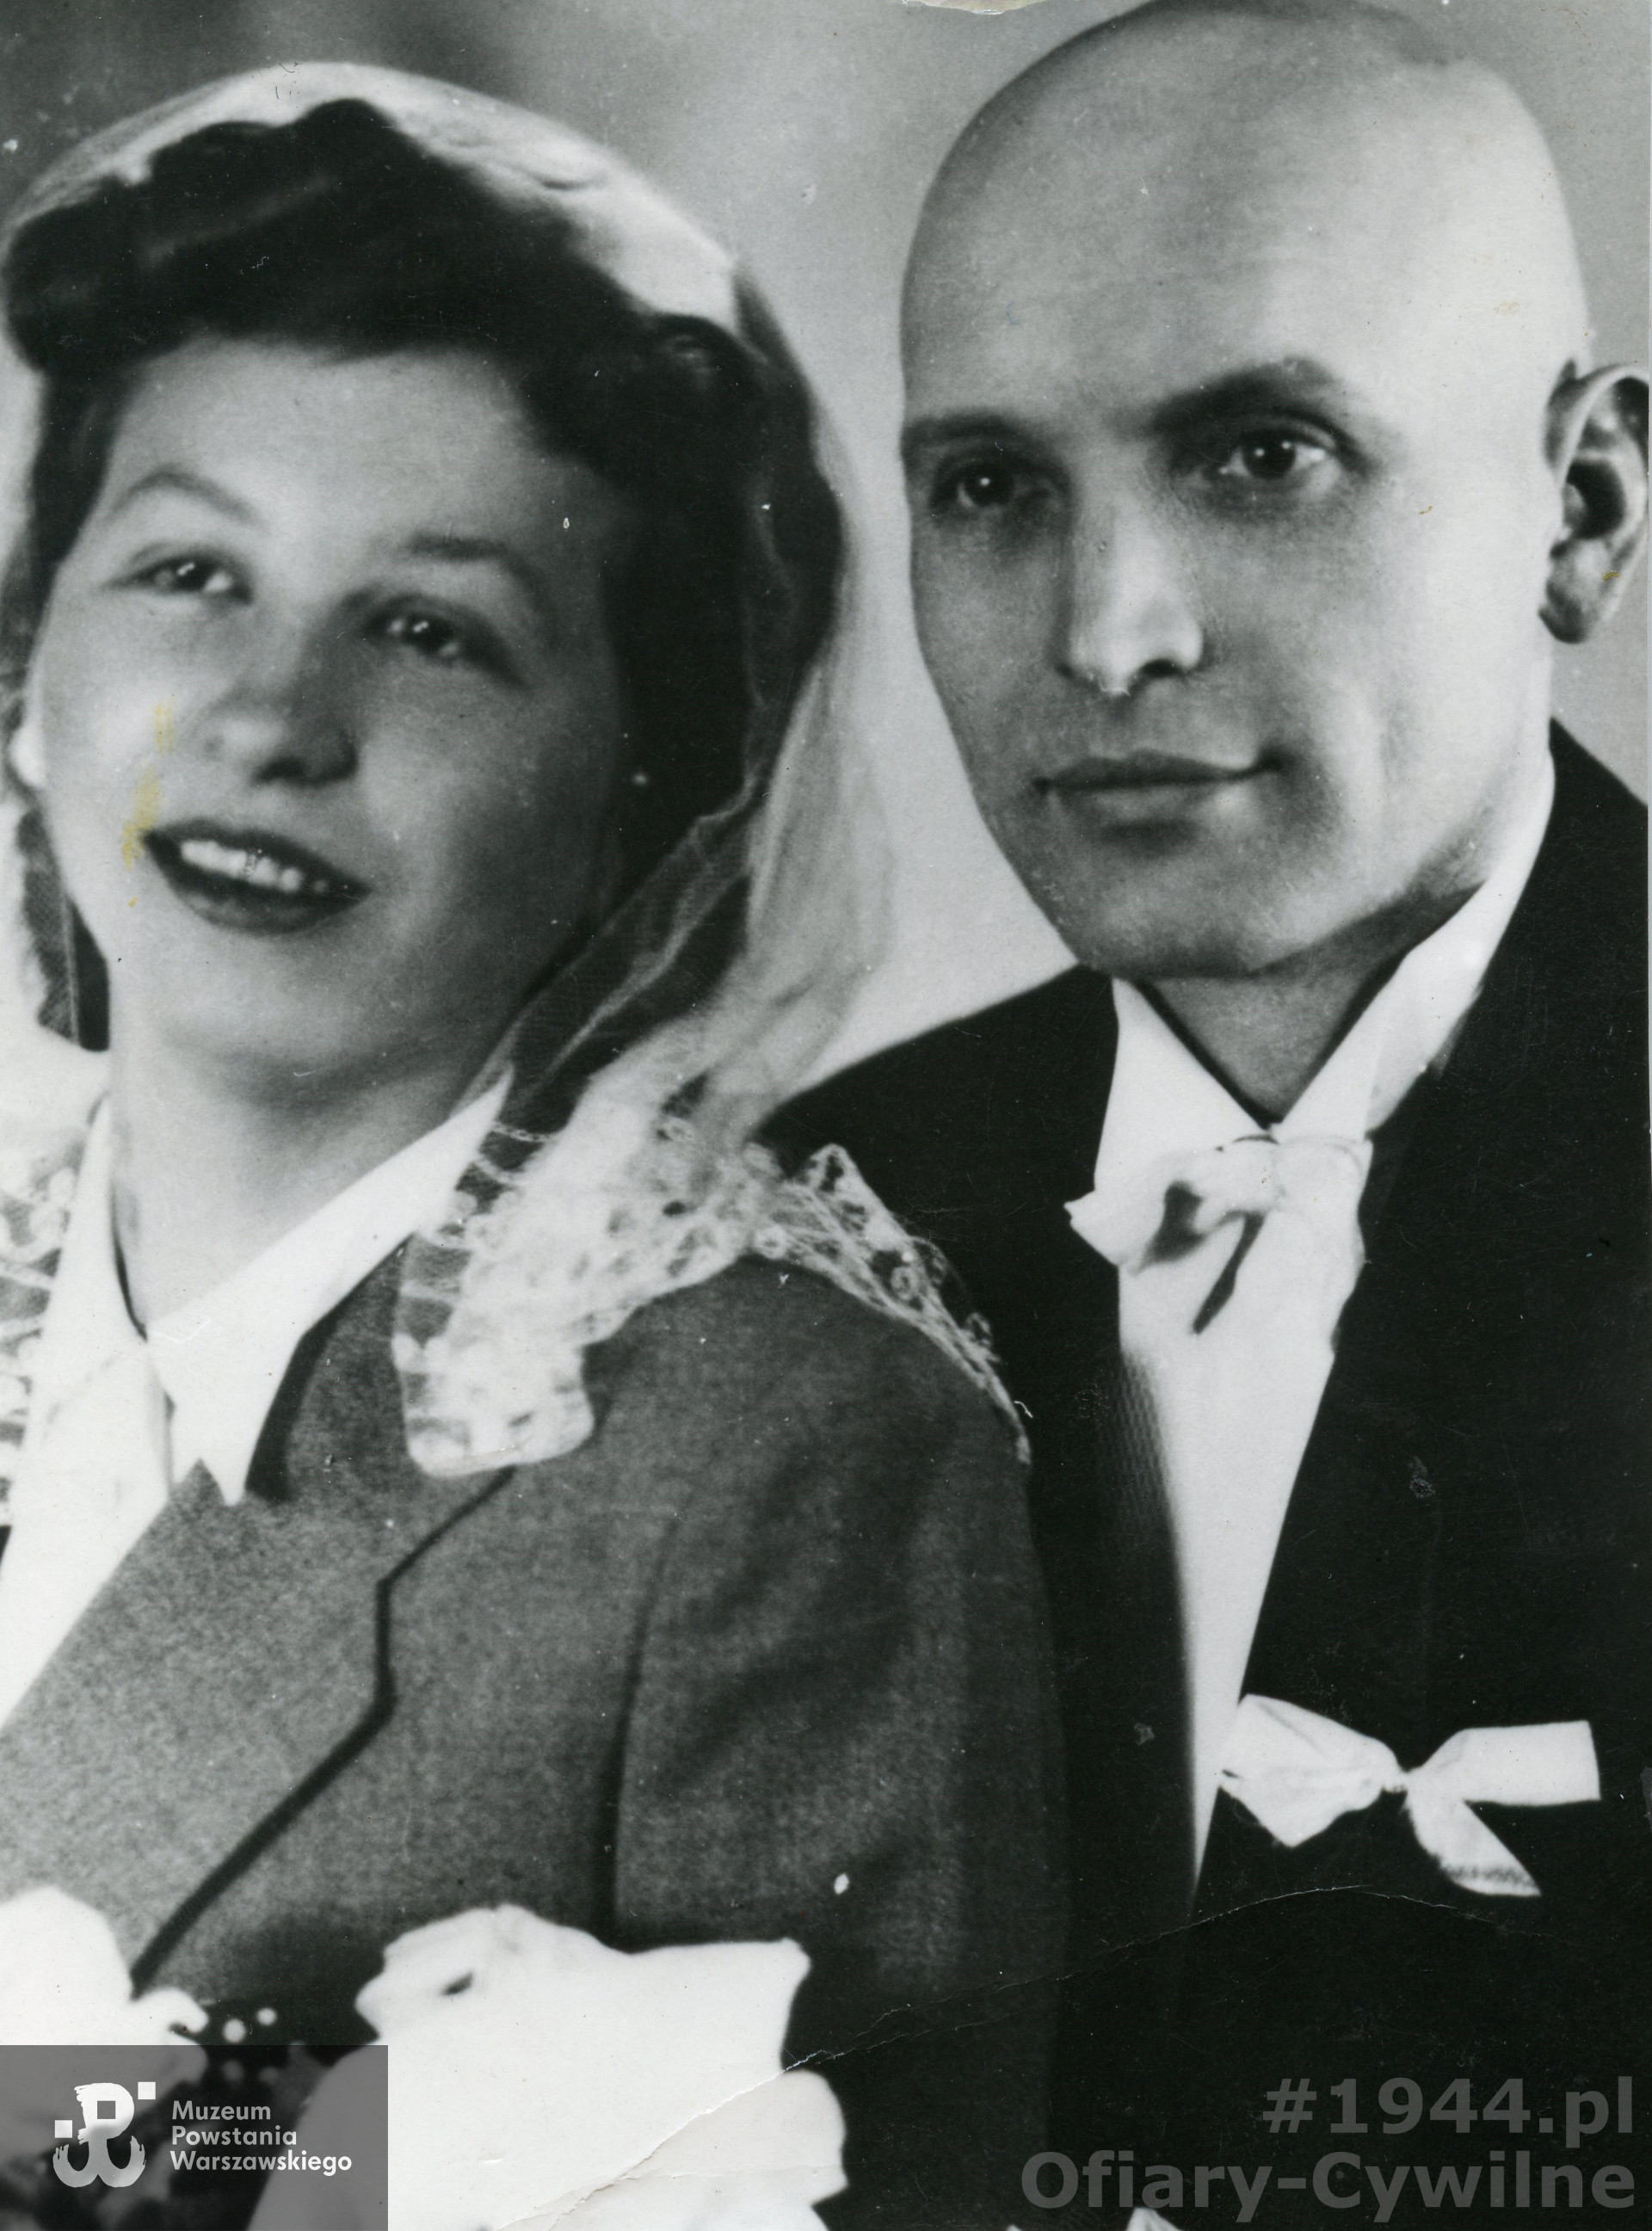 Zofia Rychlewska wraz z mężem Julianem zamordowani 6 sierpnia 1944 r. przy ul. Wolskiej 79/81. Zofia była w 8 miesiącu ciąży, zdjęcie ślubne udostępnione przez panią Olga Doleśniak-Harczuk